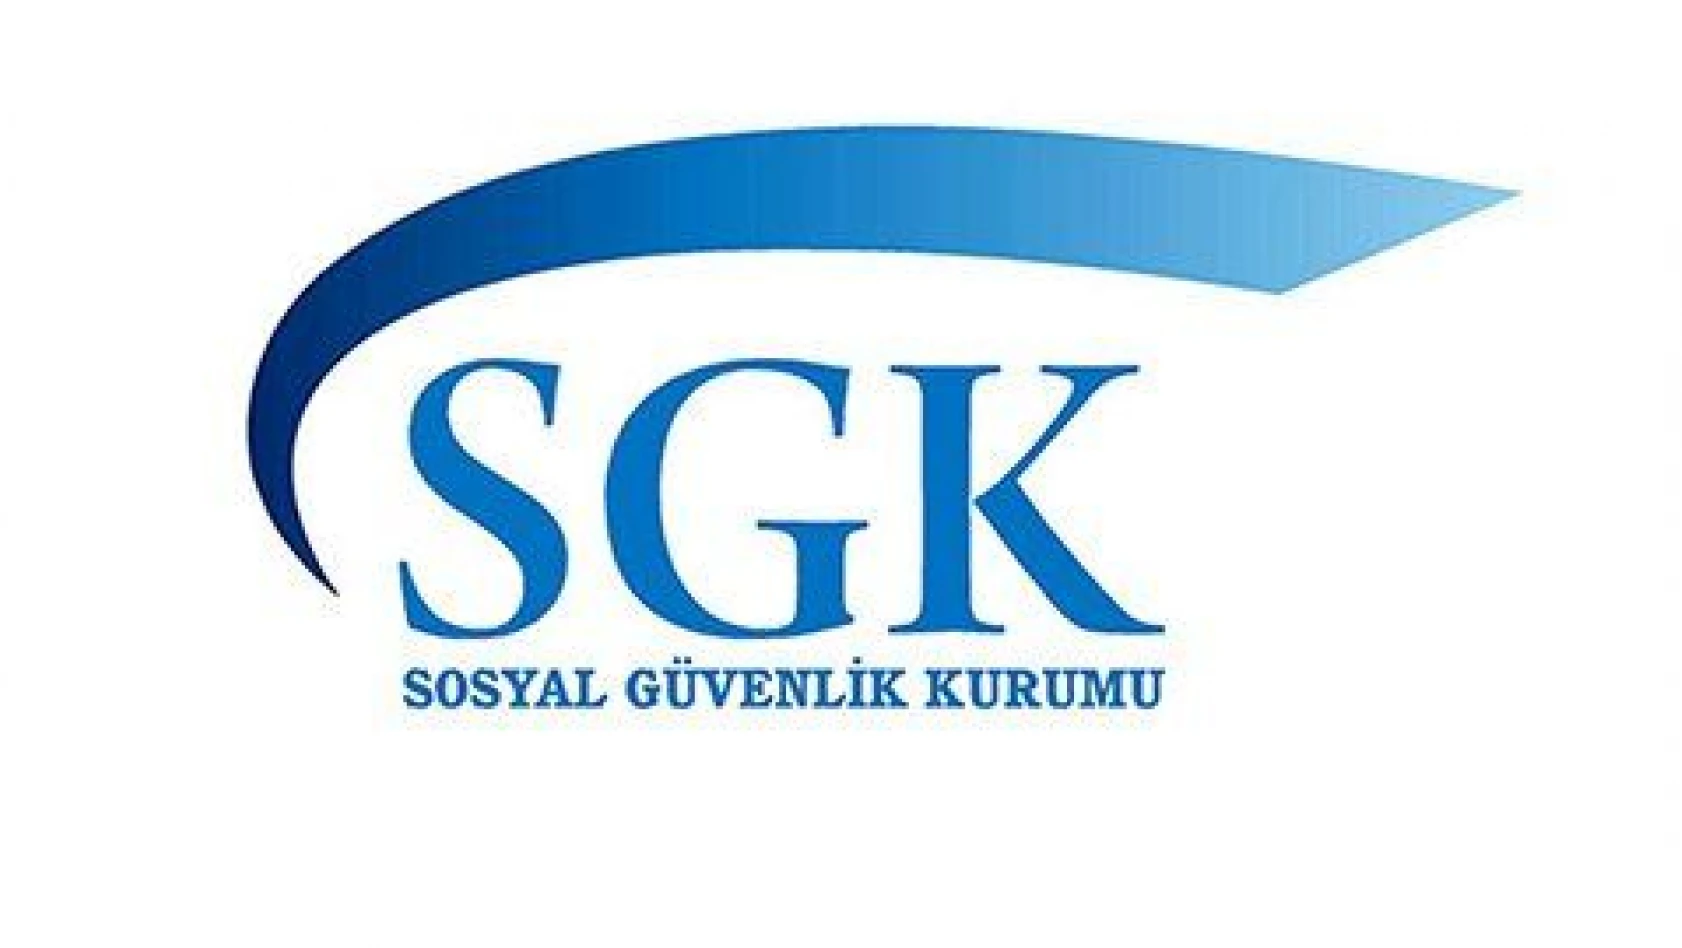 SGK'dan borçlulara büyük kolaylık